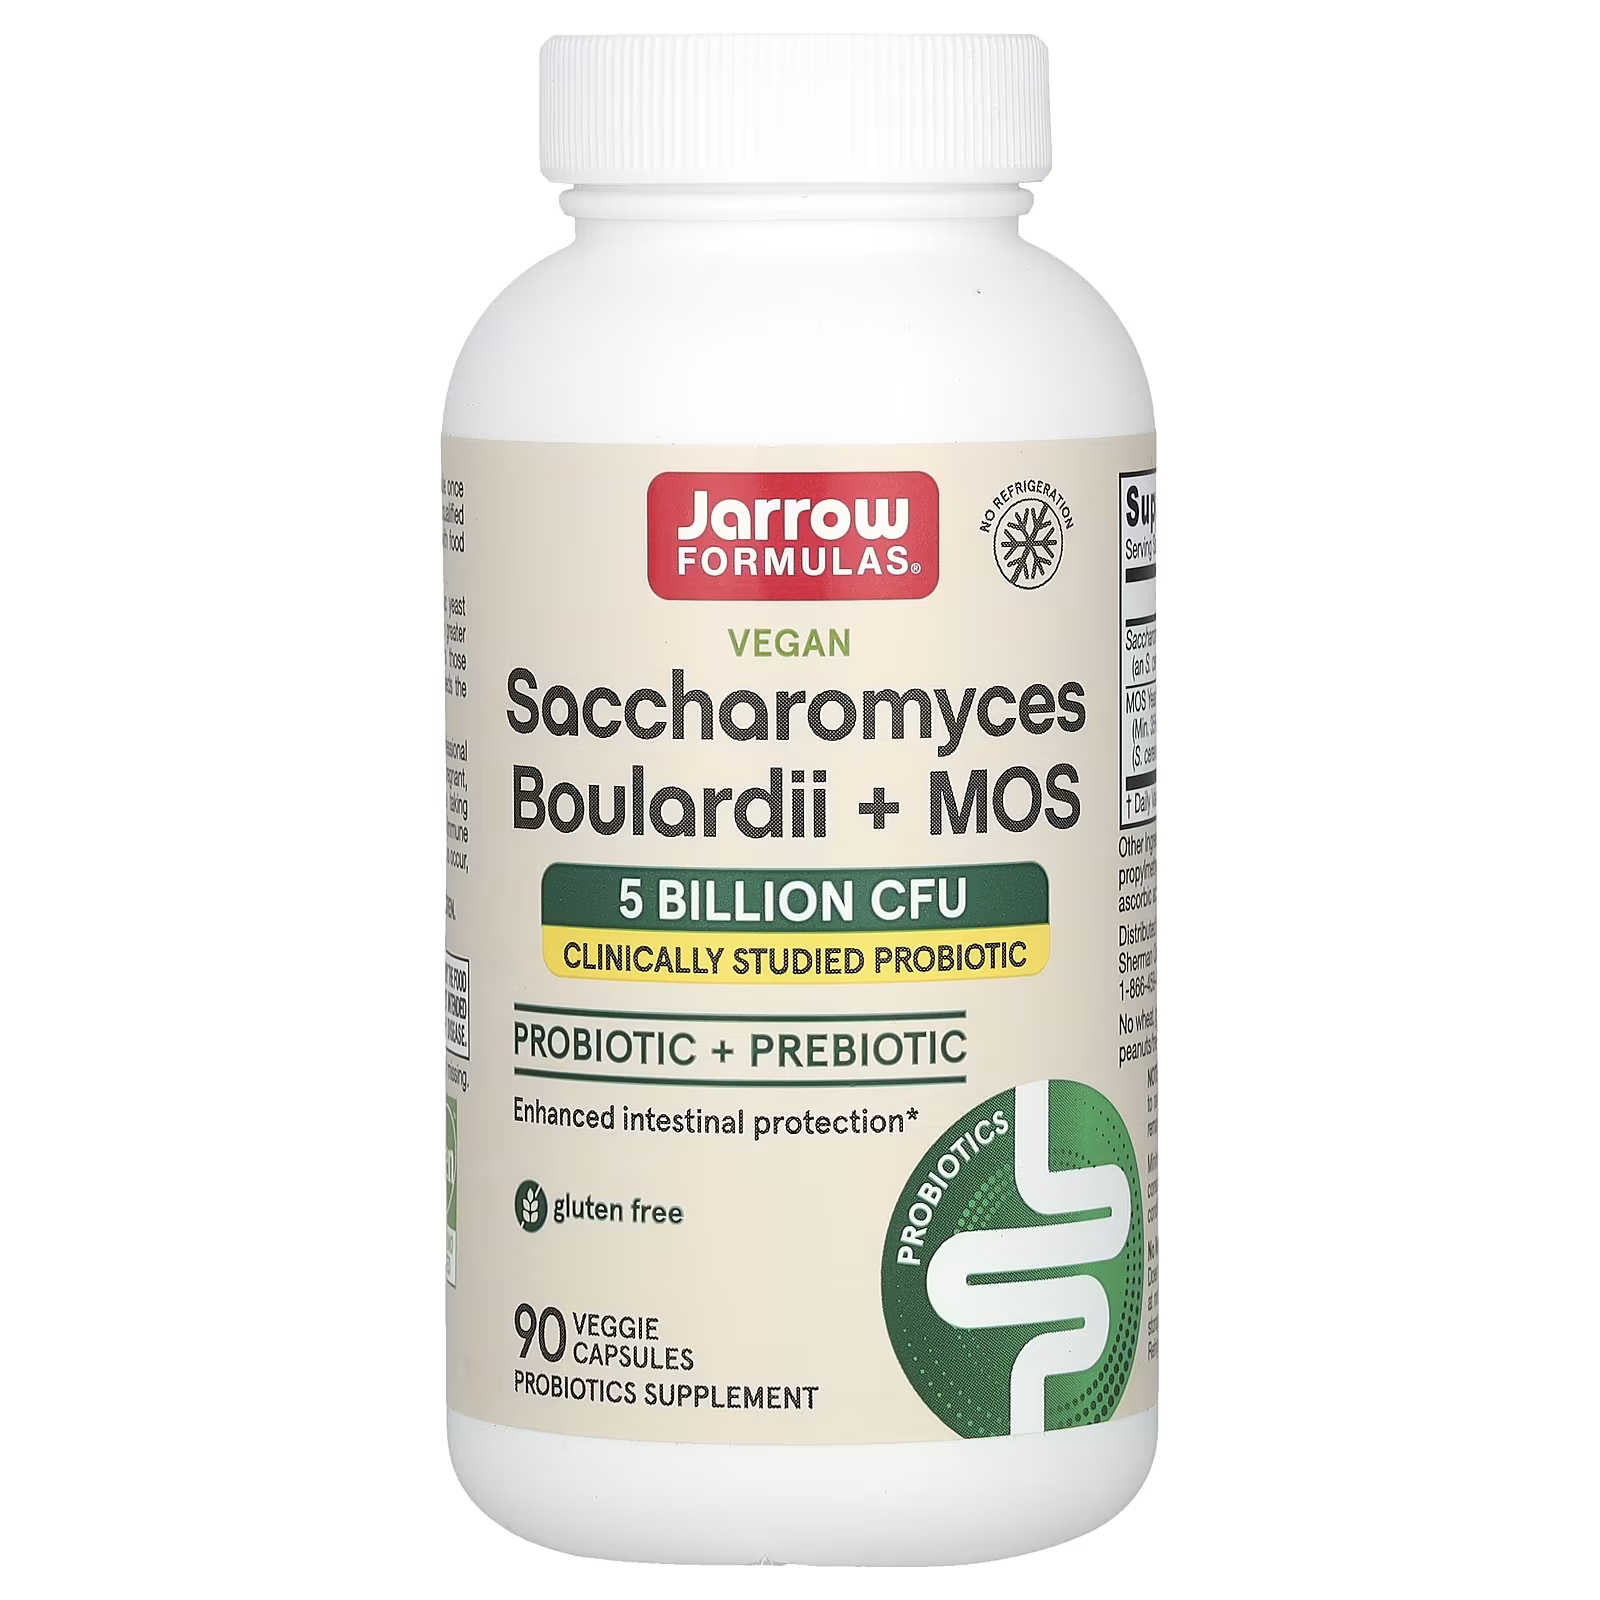 Пищевая добавка Jarrow Formulas Saccharomyces Boulardii + MOS 5 миллиардов КОЕ, 90 капсул